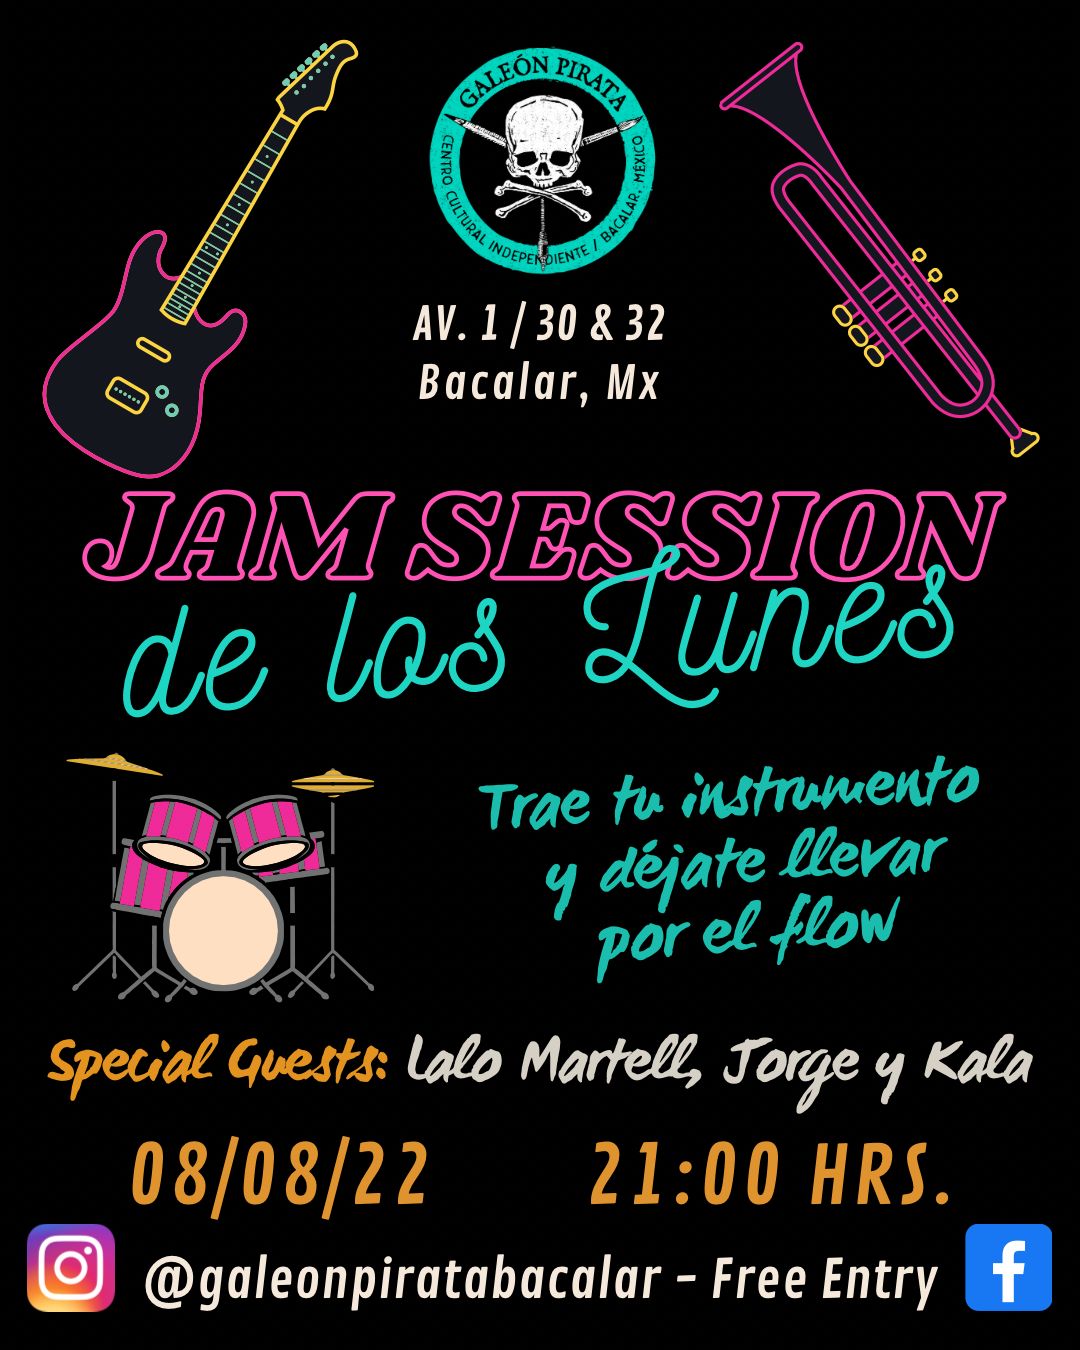 Jam session de los lunes